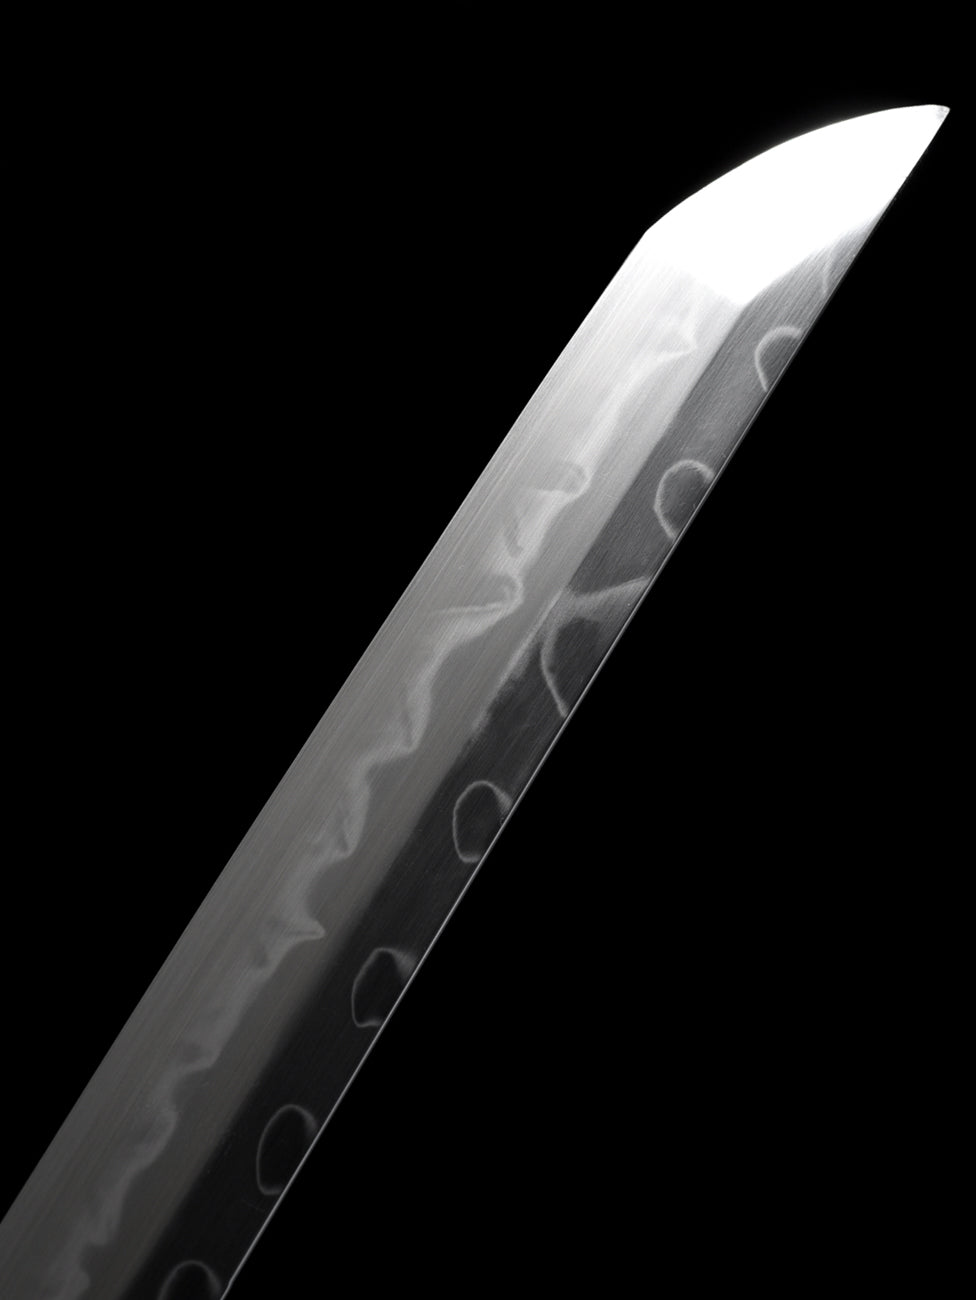 Clay Tempered Bamboo katana Samurai swords Collect long knife